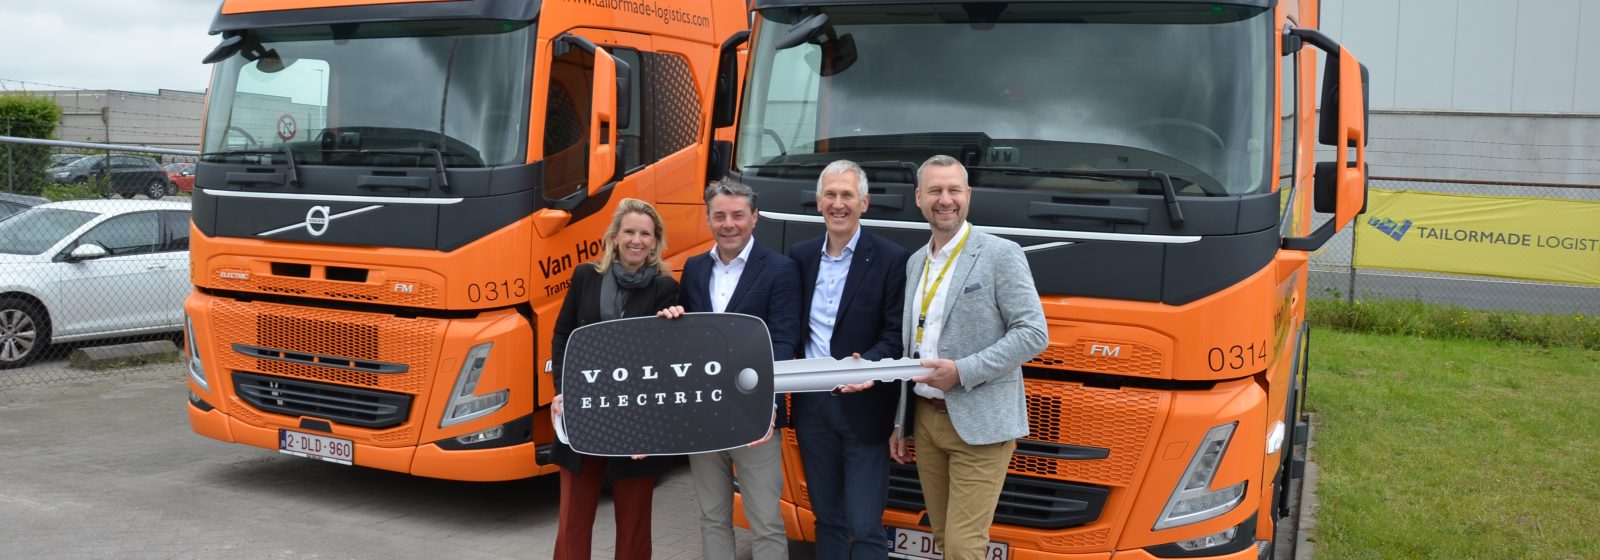 Eerste elektrische trucks Tailormade Logistics. Op de foto (vlnr): schepen Bracke, Frank Kimpe (Volvo), Frank Van Hove (TML), Michael Myers (TML)